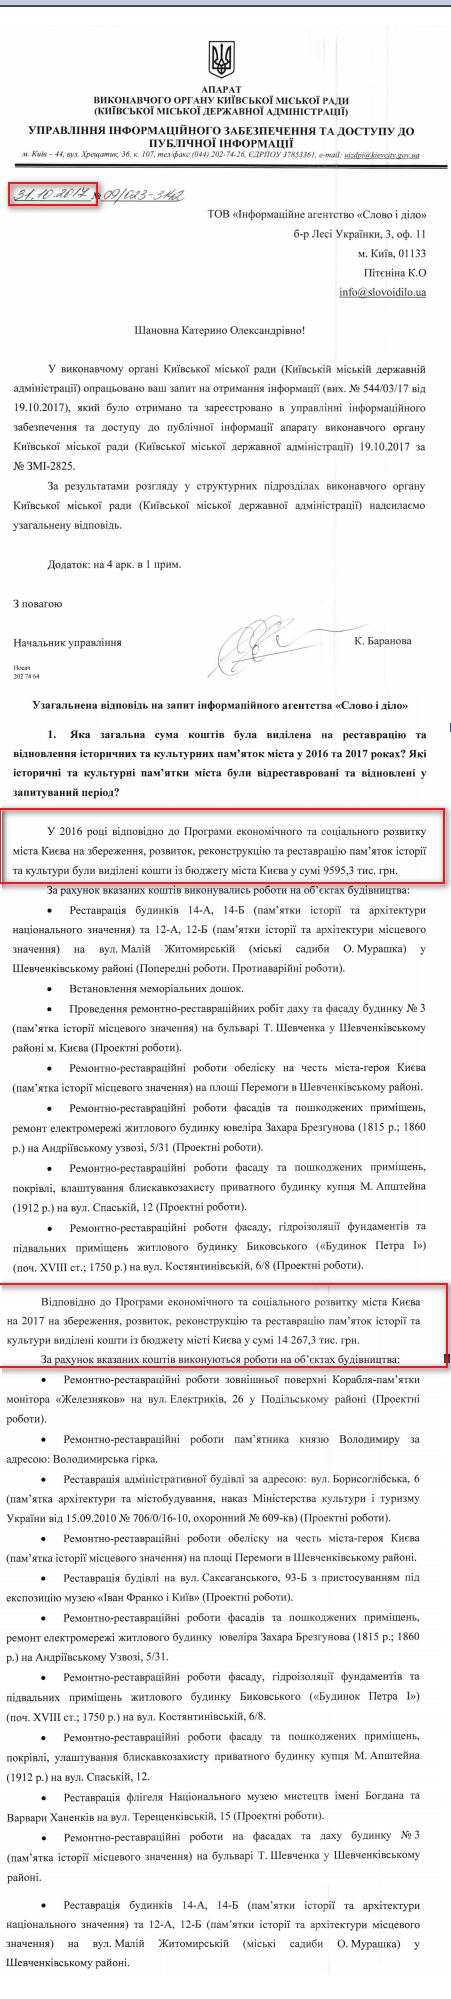 Лист Київської міської ради від 31 жовтня 2017 року